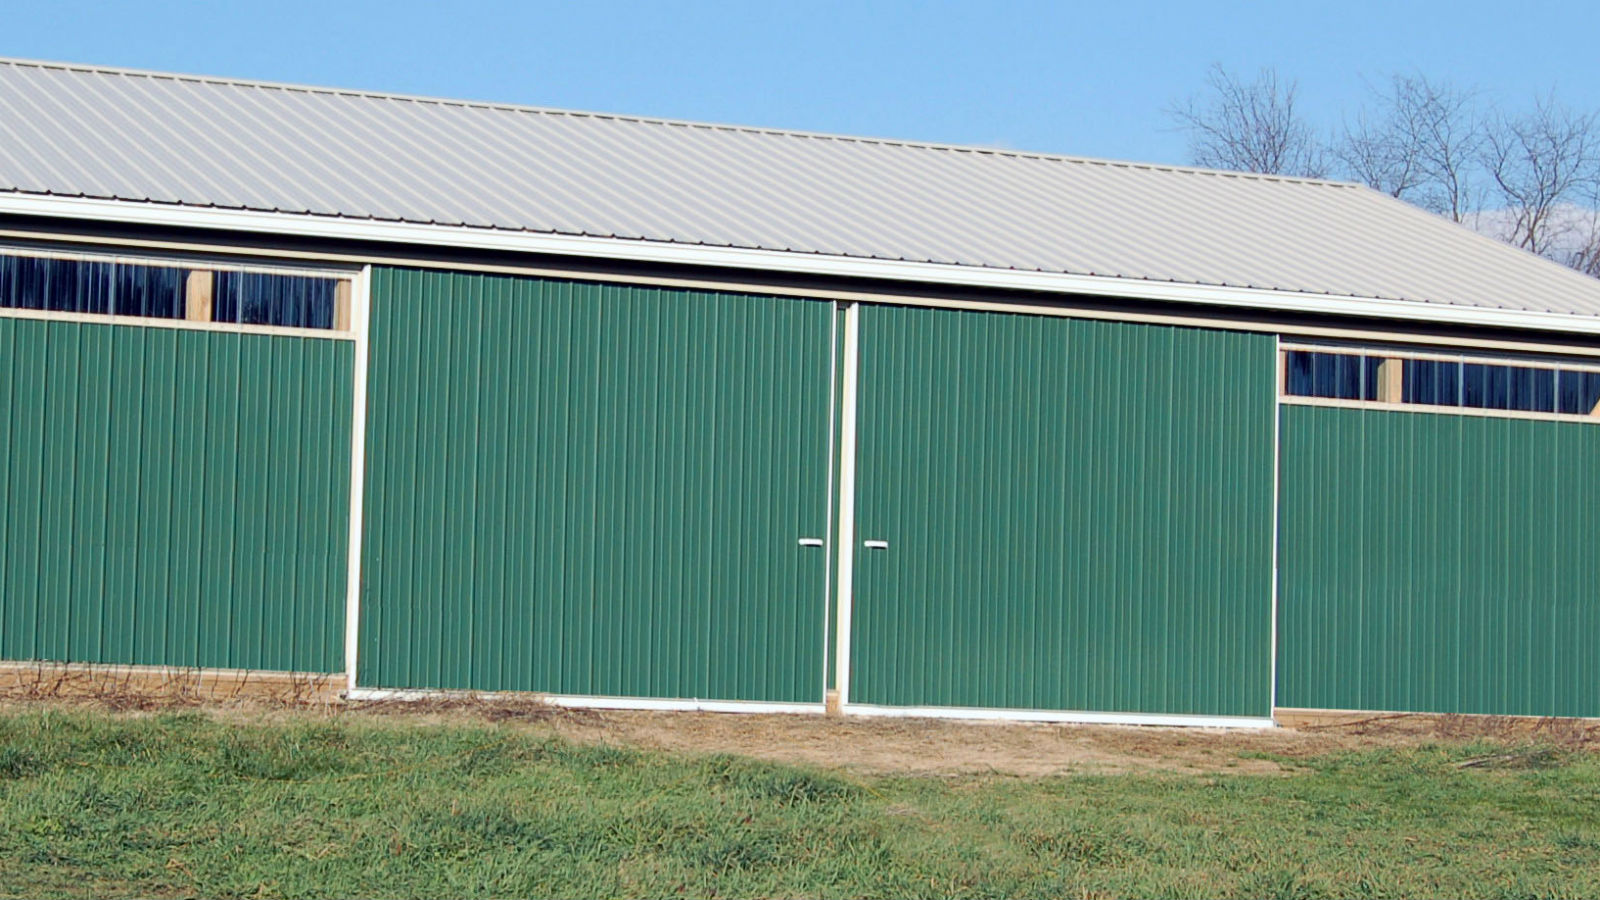 Sheds Agricultural & Industrial MAX 440KG Barns Sliding Door Parts for Garages 